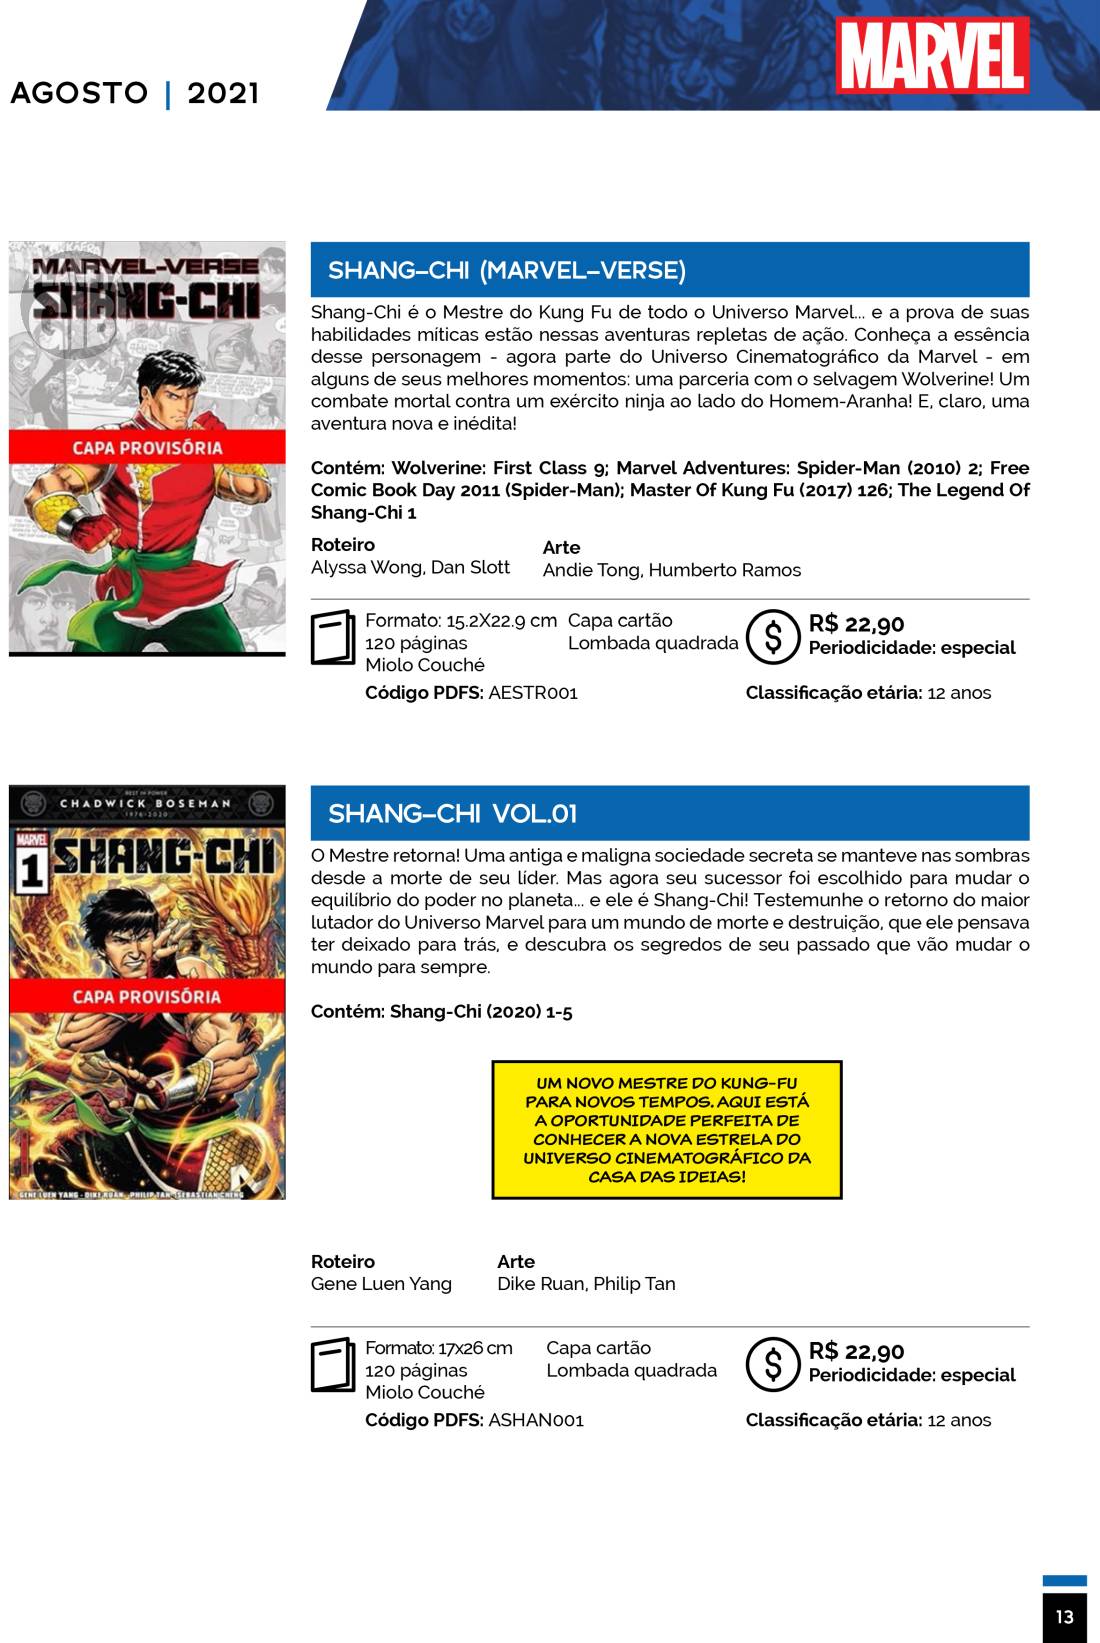 9 - Checklist Marvel/Panini (Julho/2020 - pág.09) - Página 9 Catalogo-Julho-Agosto-13